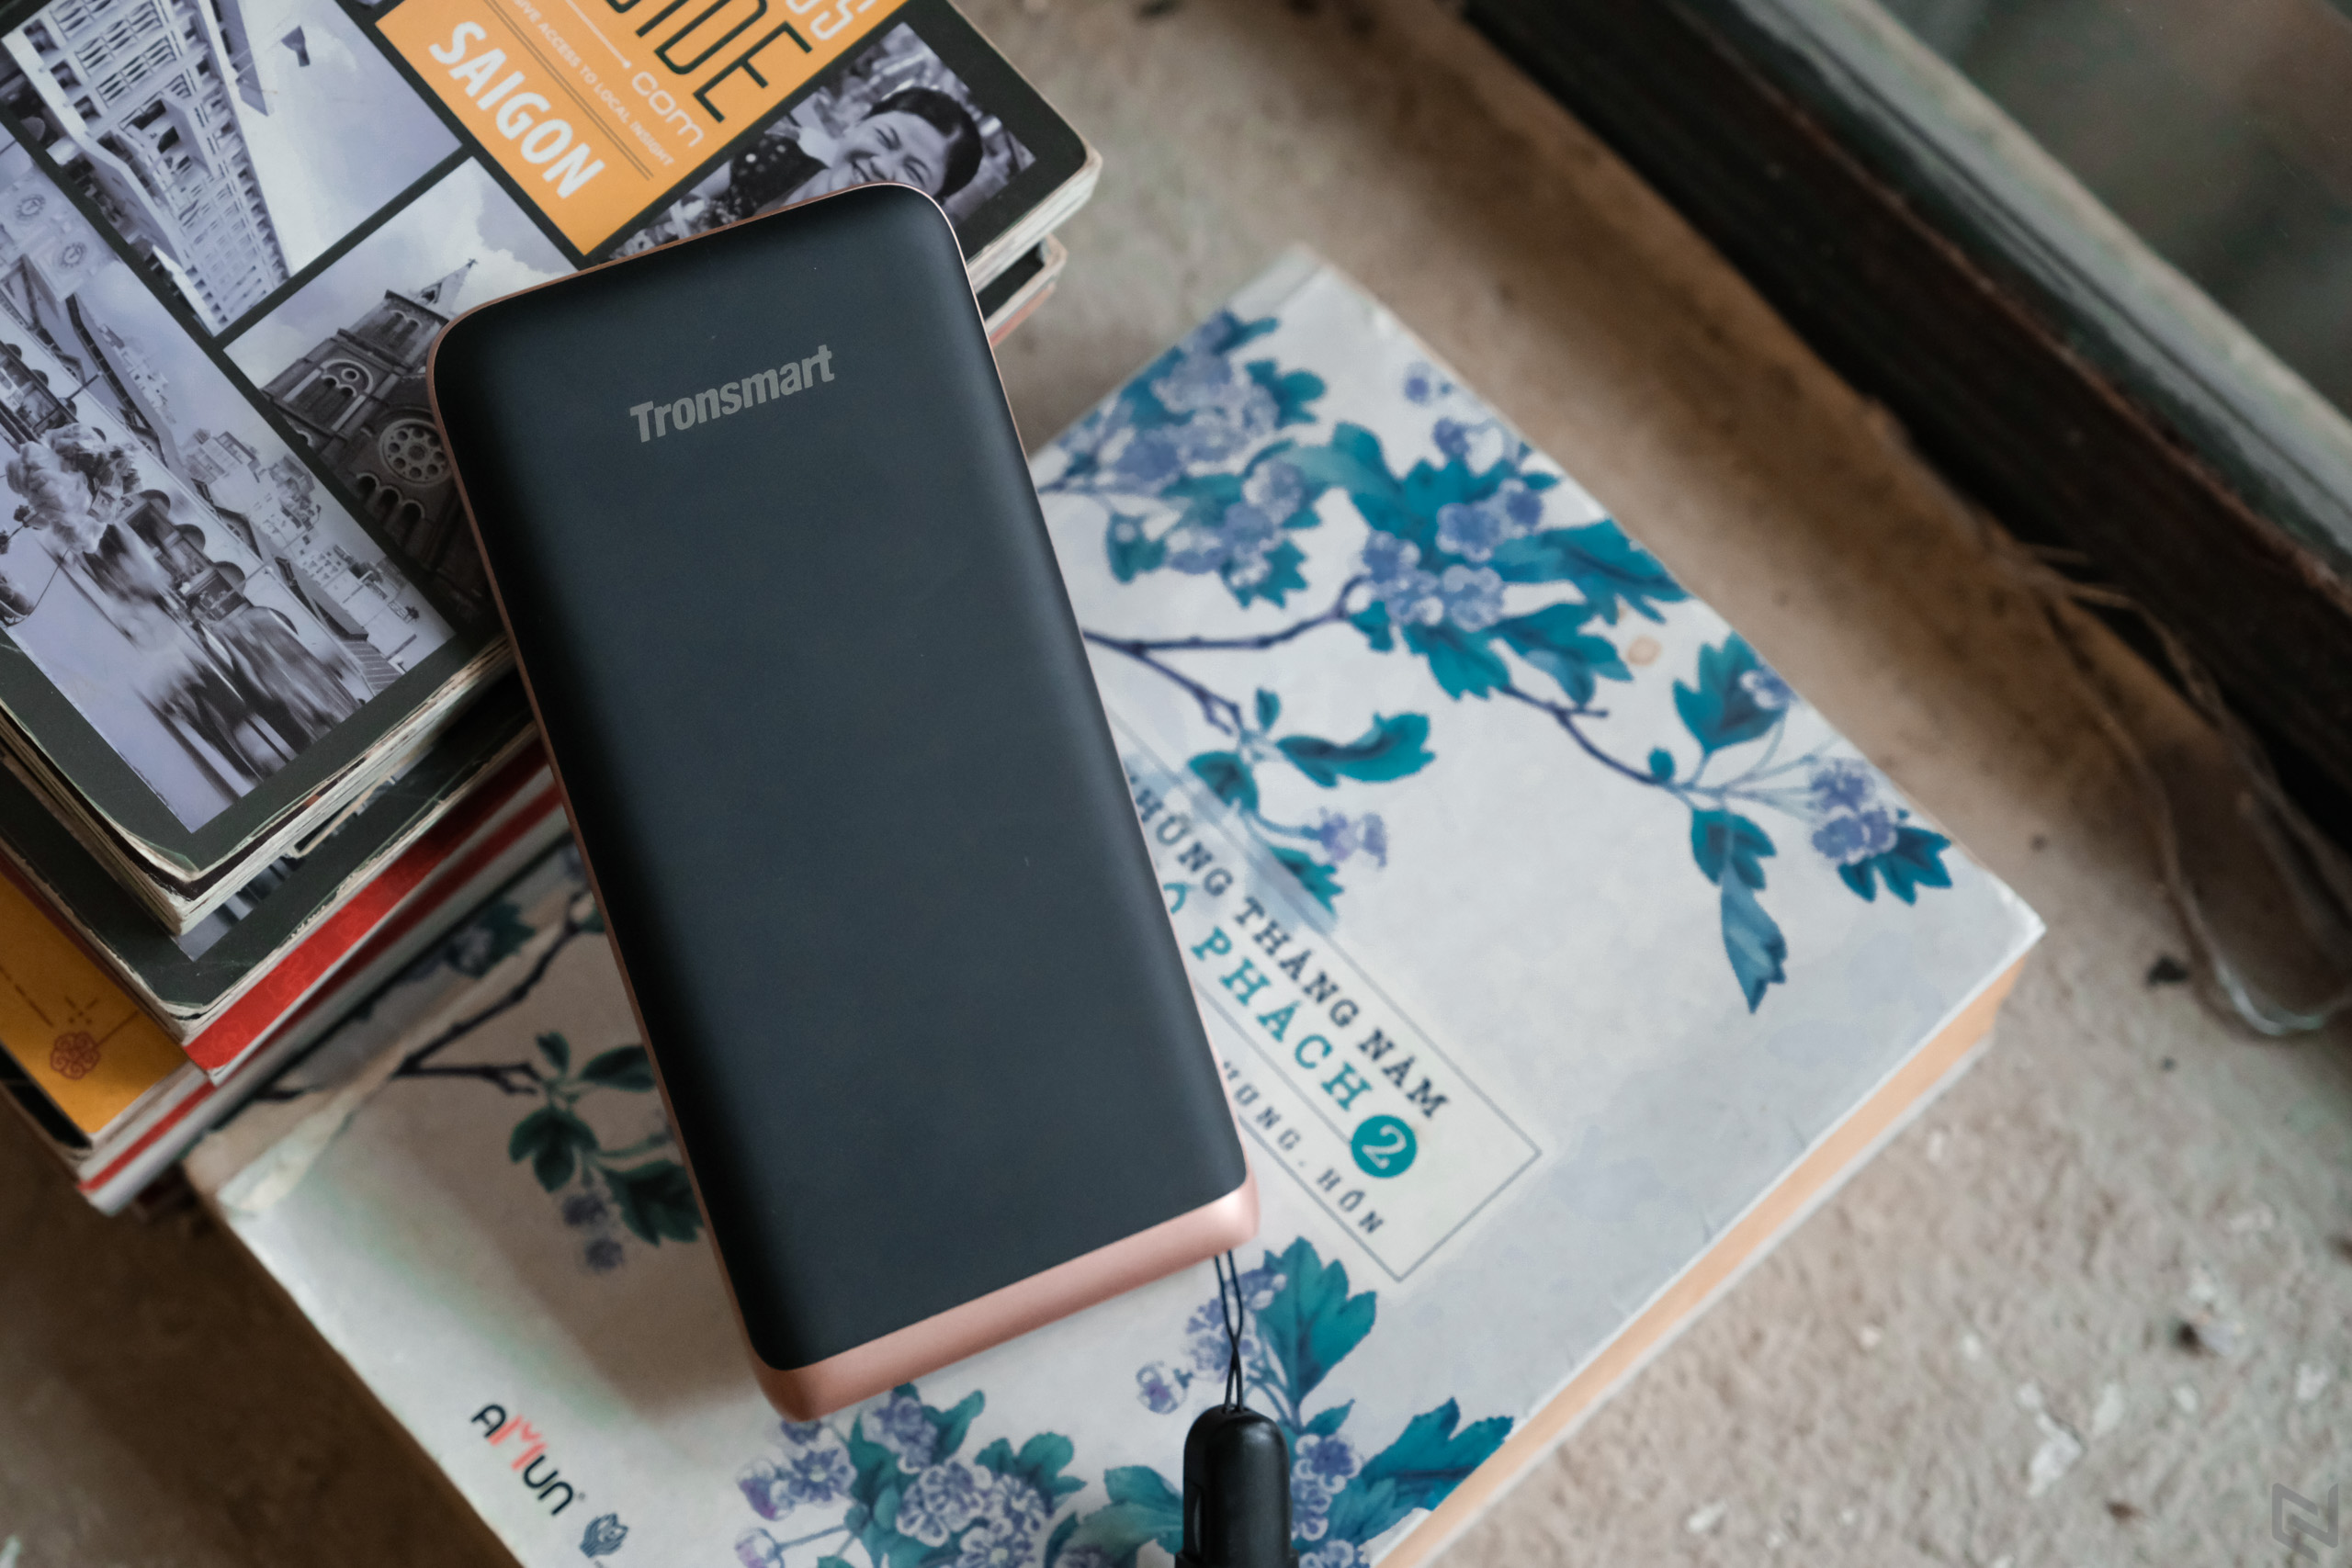 Tuần này có gì: Triễn lãm công nghệ CES 2019, Redmi Note 7 ra mắt, trên tay Vivo Y91,...